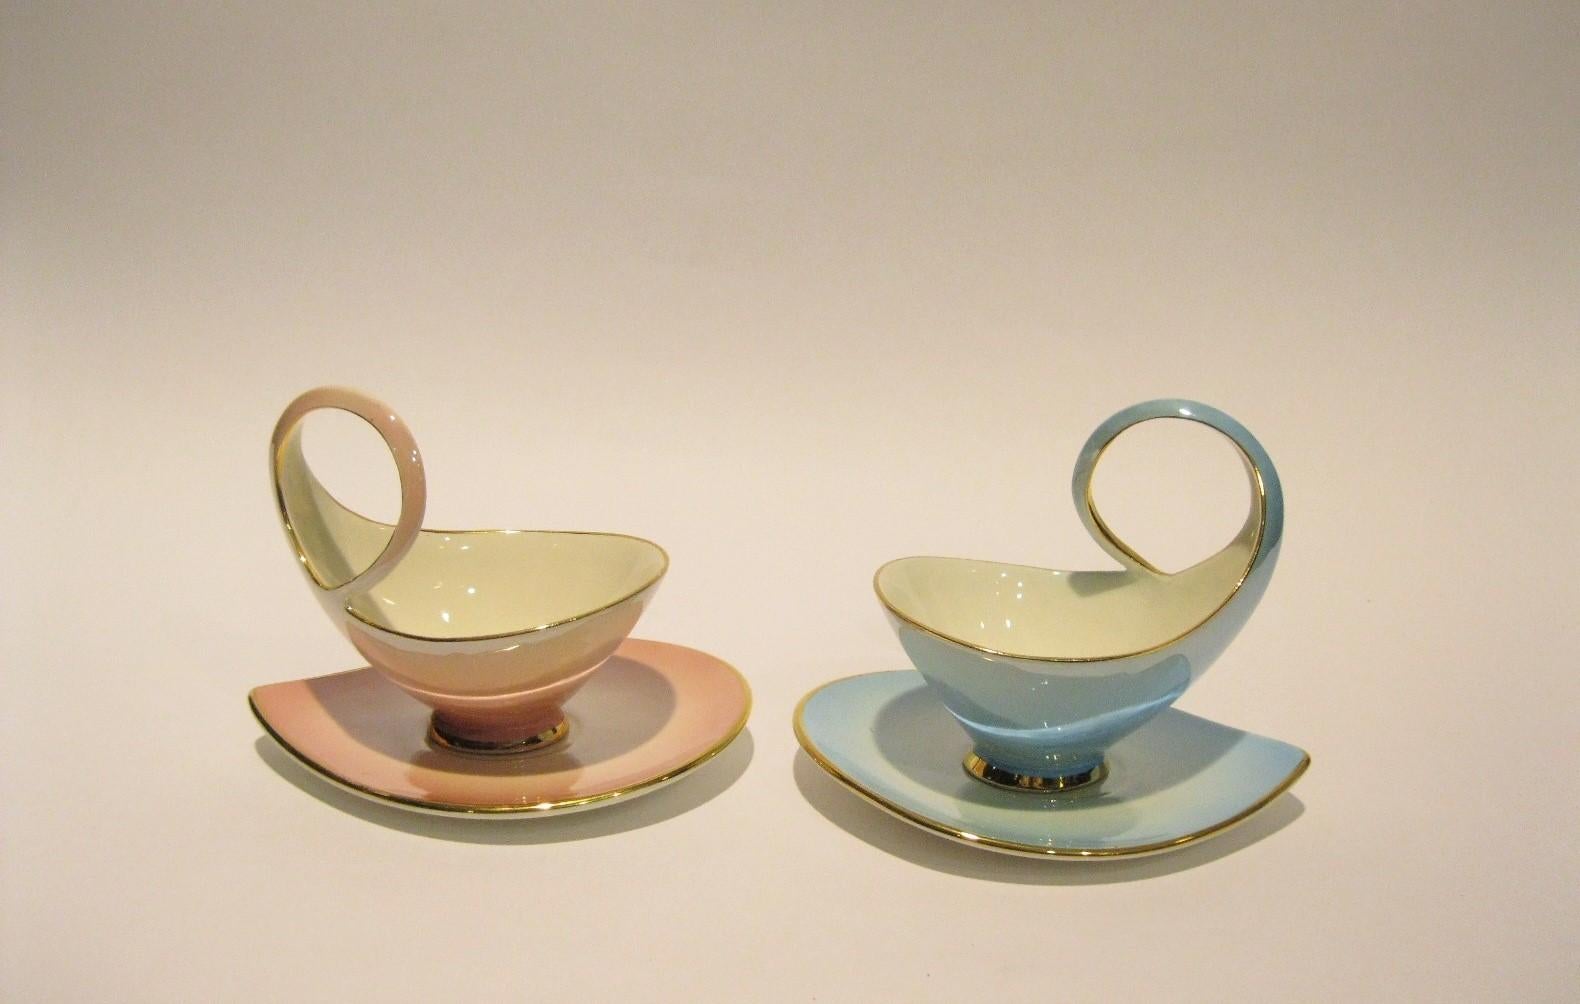 Fired Tea Set by Italo Casini, Sesto Fiorentino, Italy, circa 1950s